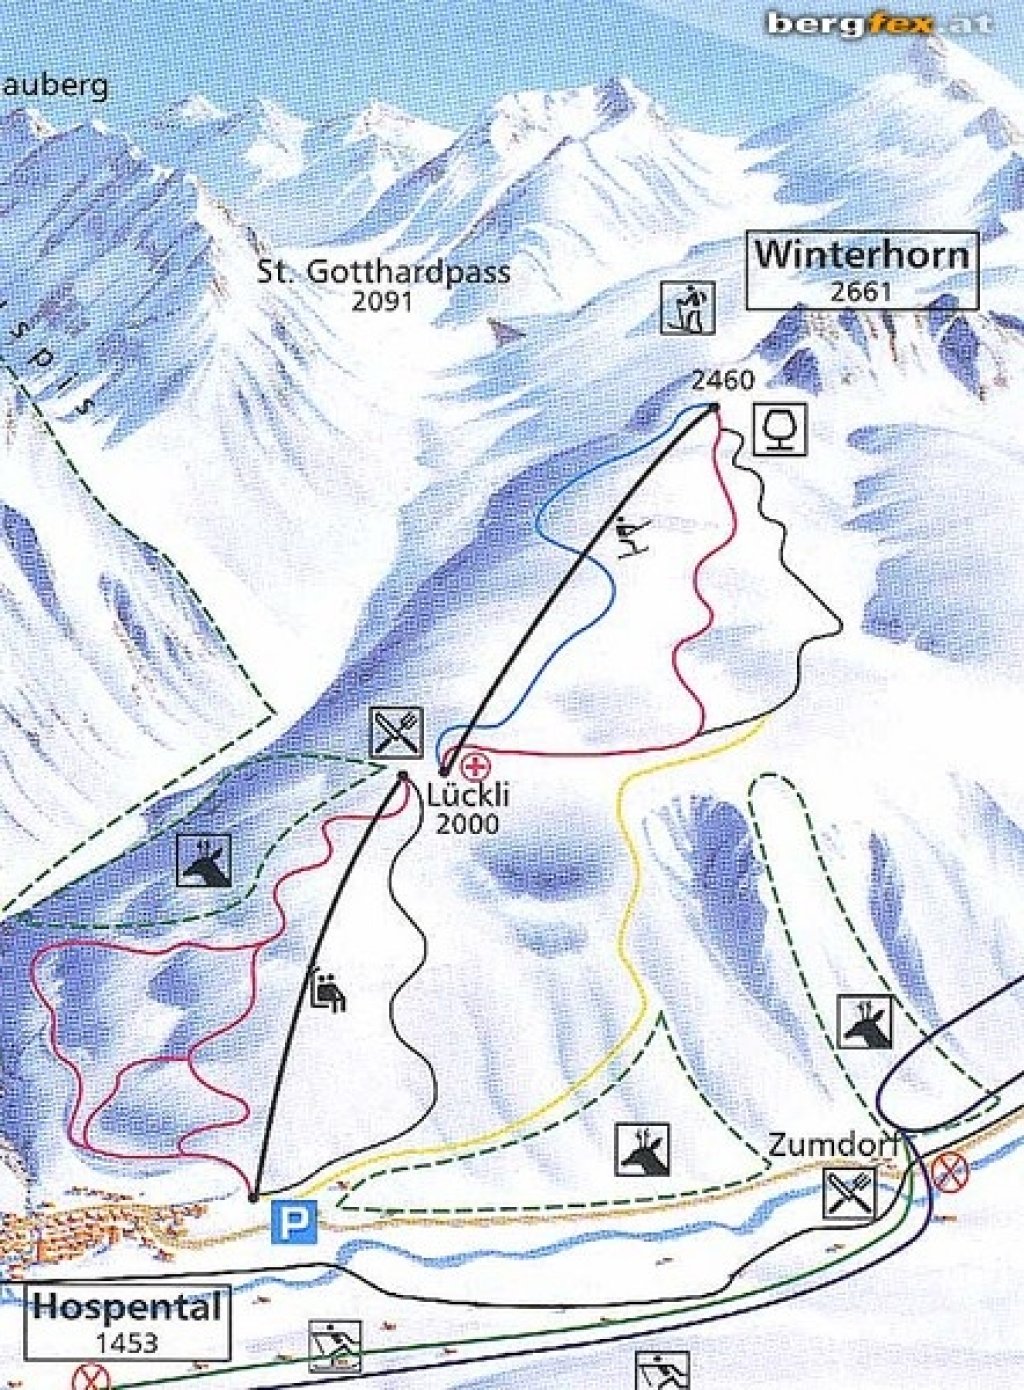 Auf Investorensuche: Das Skigebiet Winterhorn im verschlafenen Örtchen Hospental (Uri/Ch).